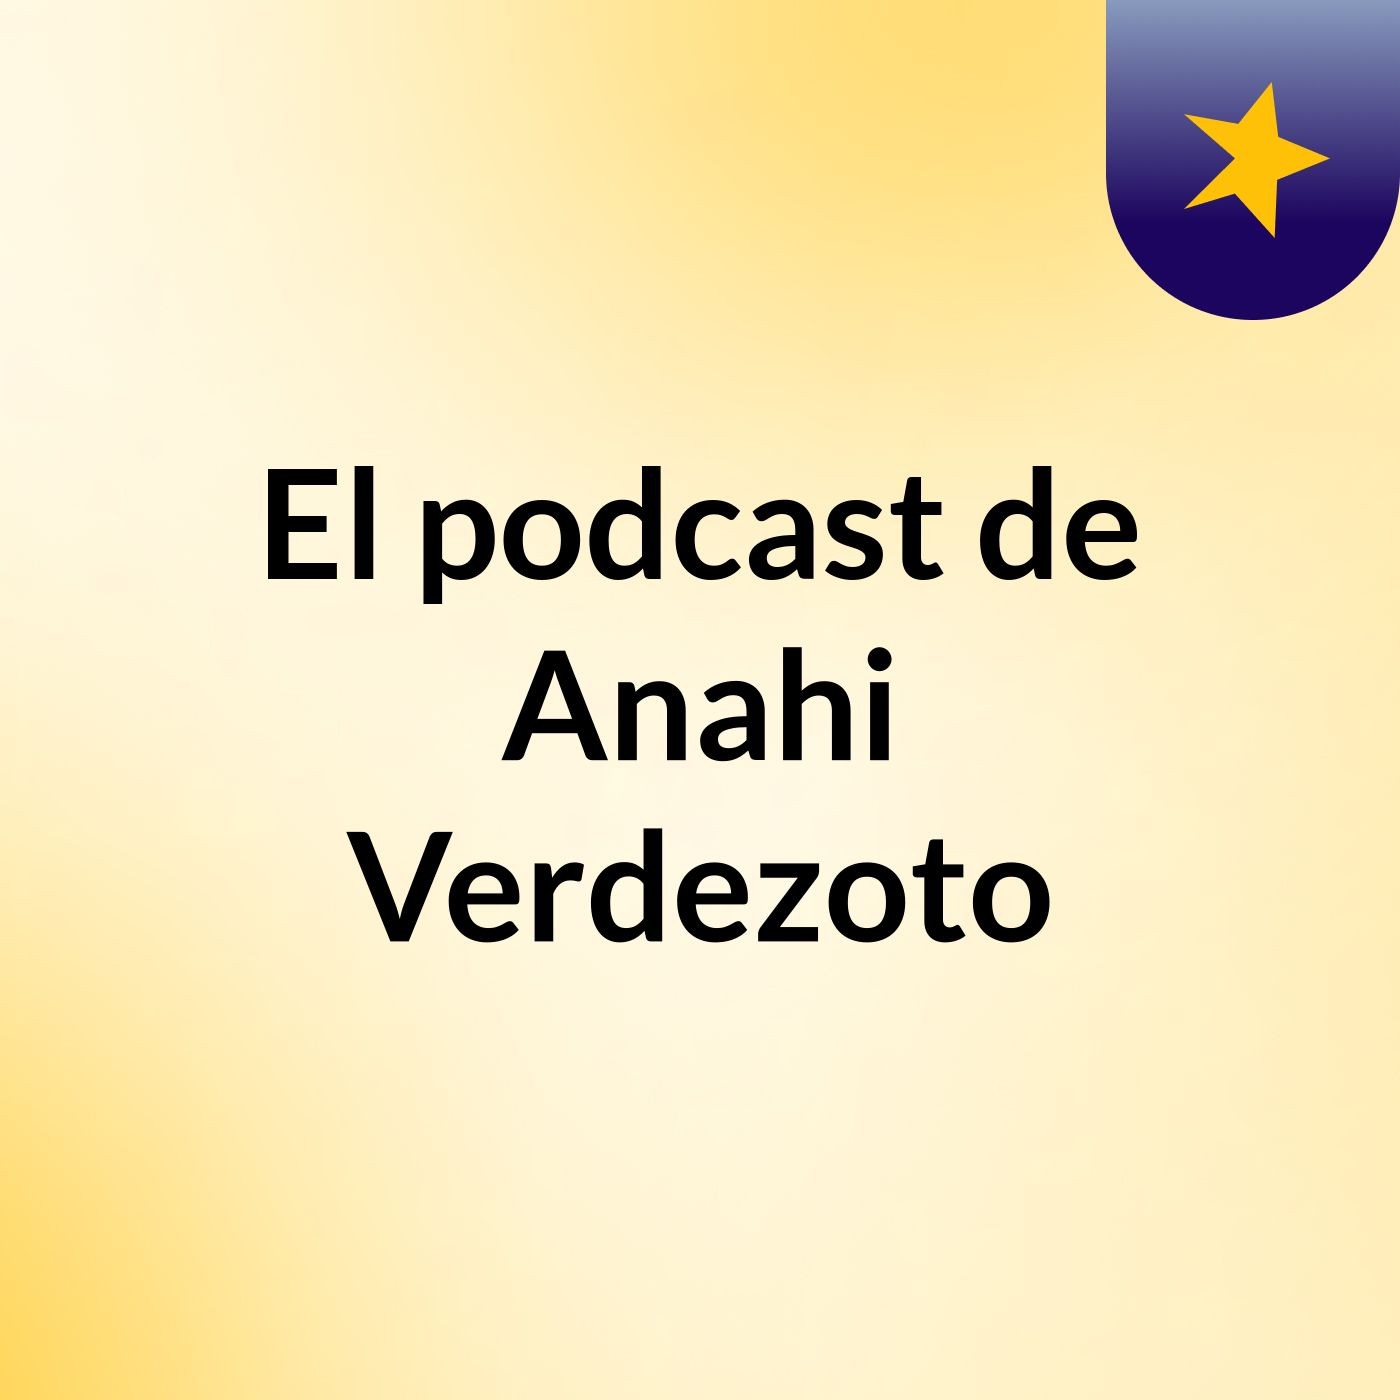 El podcast de Anahi Verdezoto